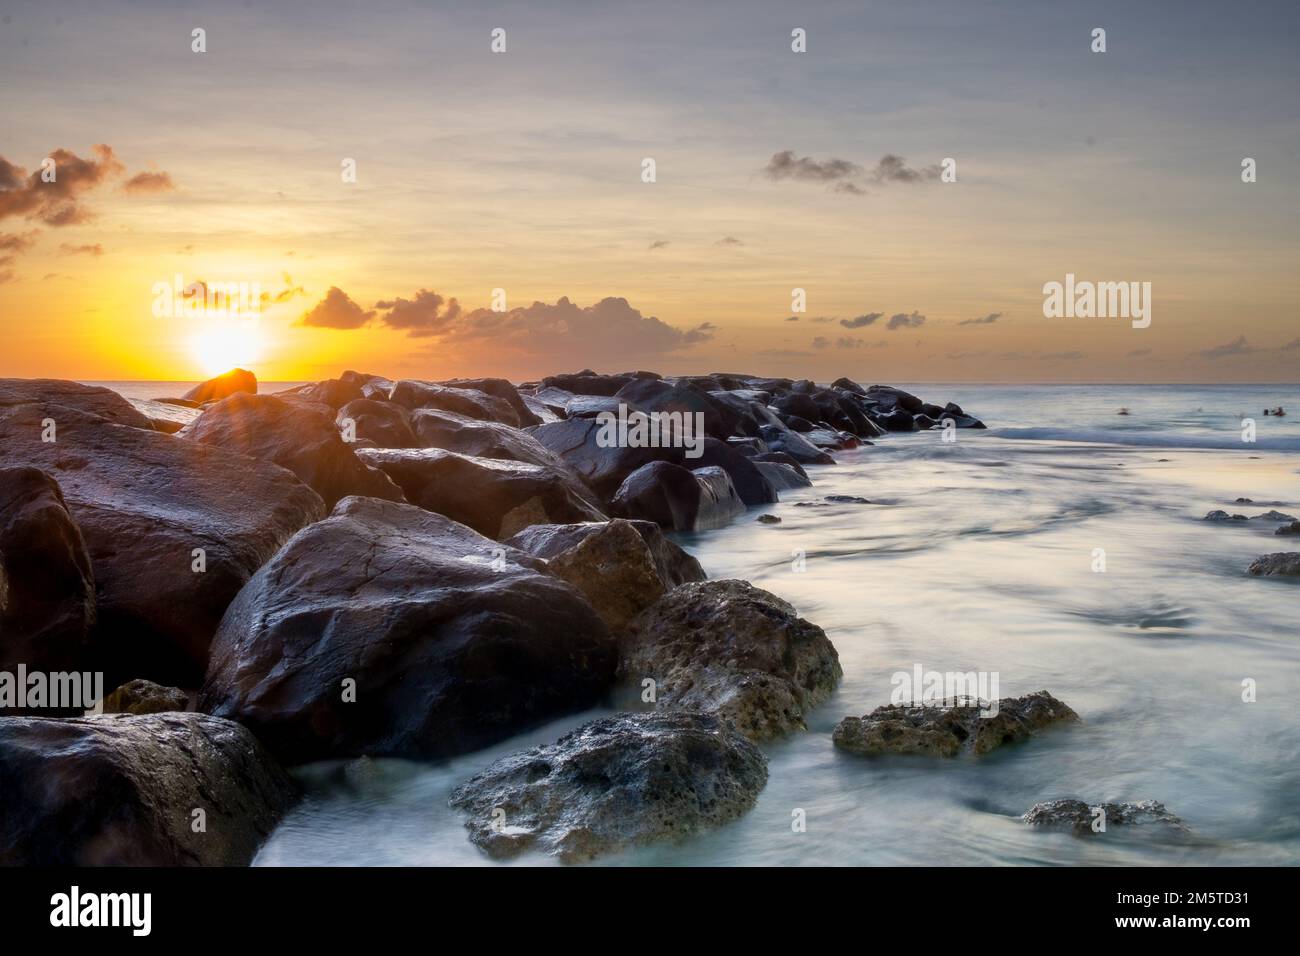 Coucher de soleil tranquille avec de grandes pierres entrant dans la mer Banque D'Images